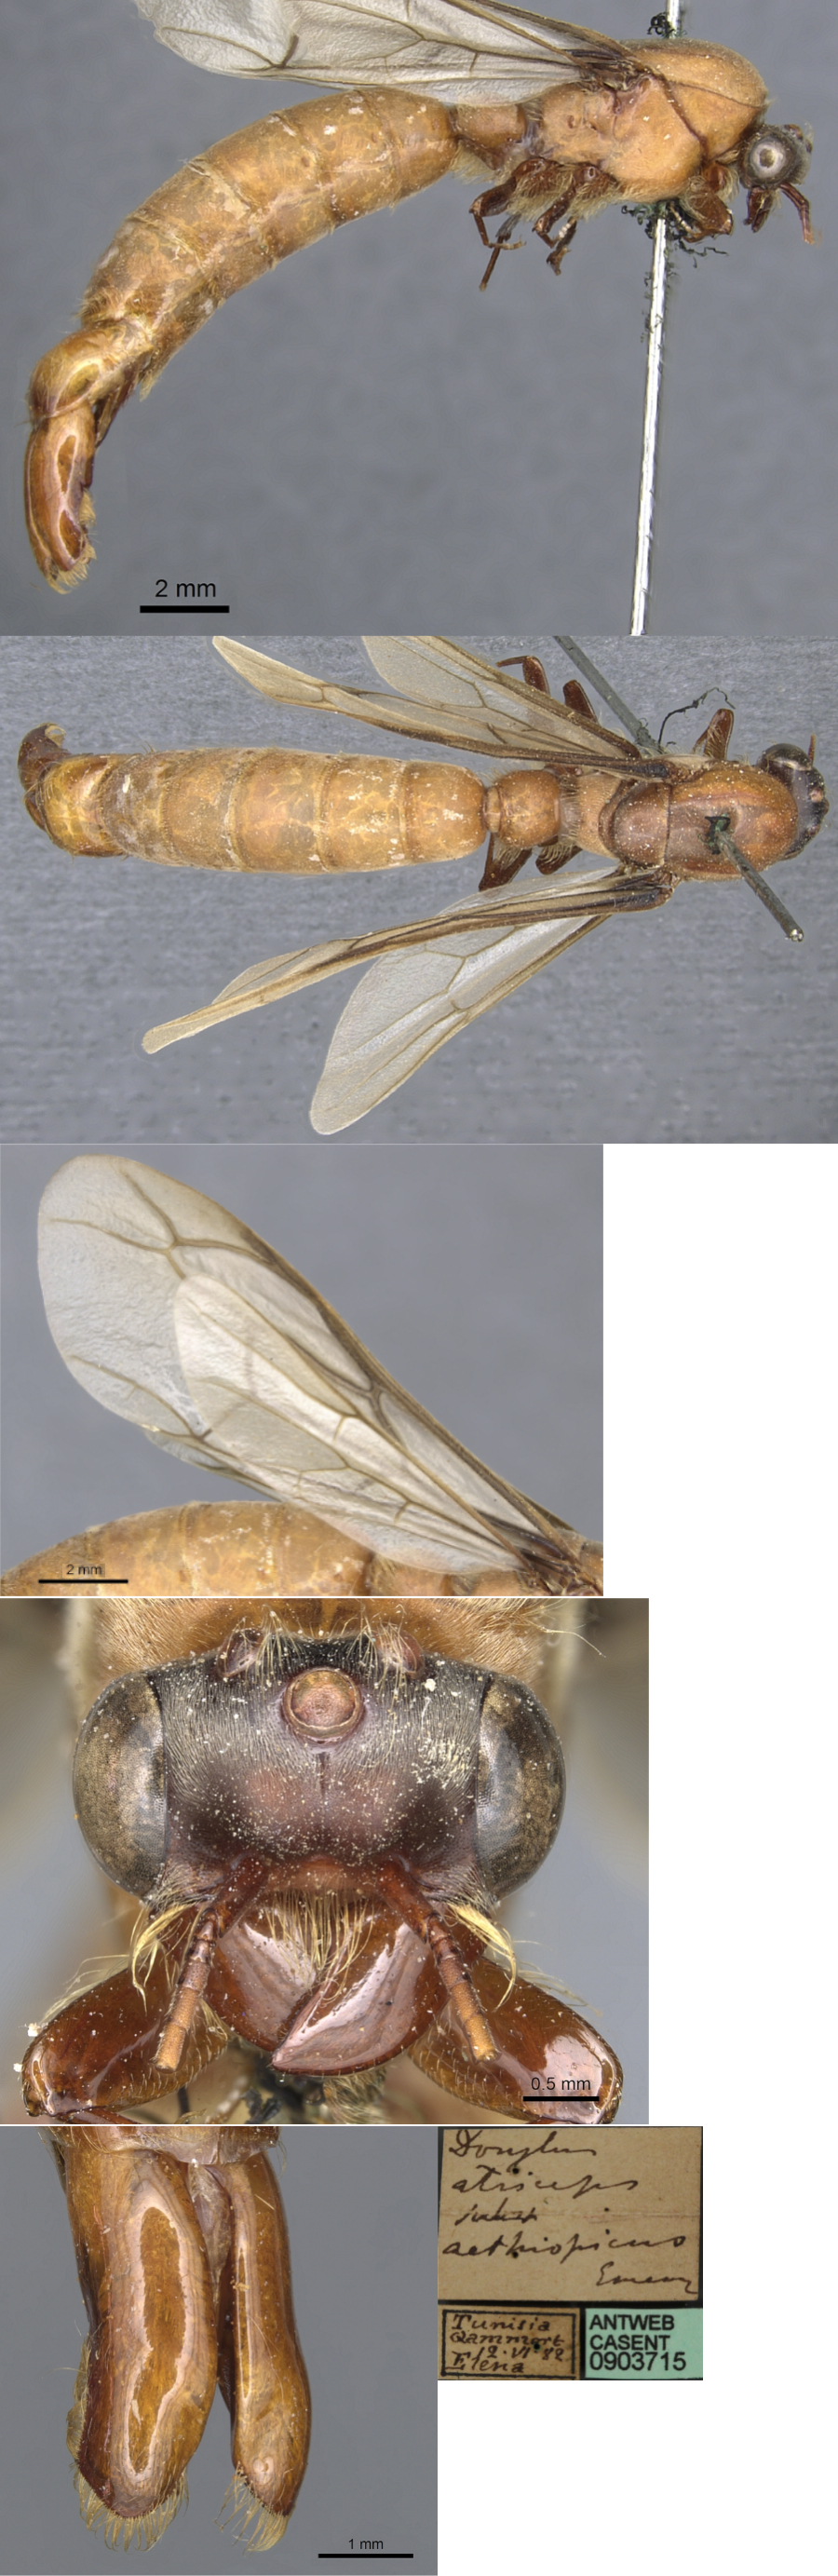 Dorylus aethiopicus male